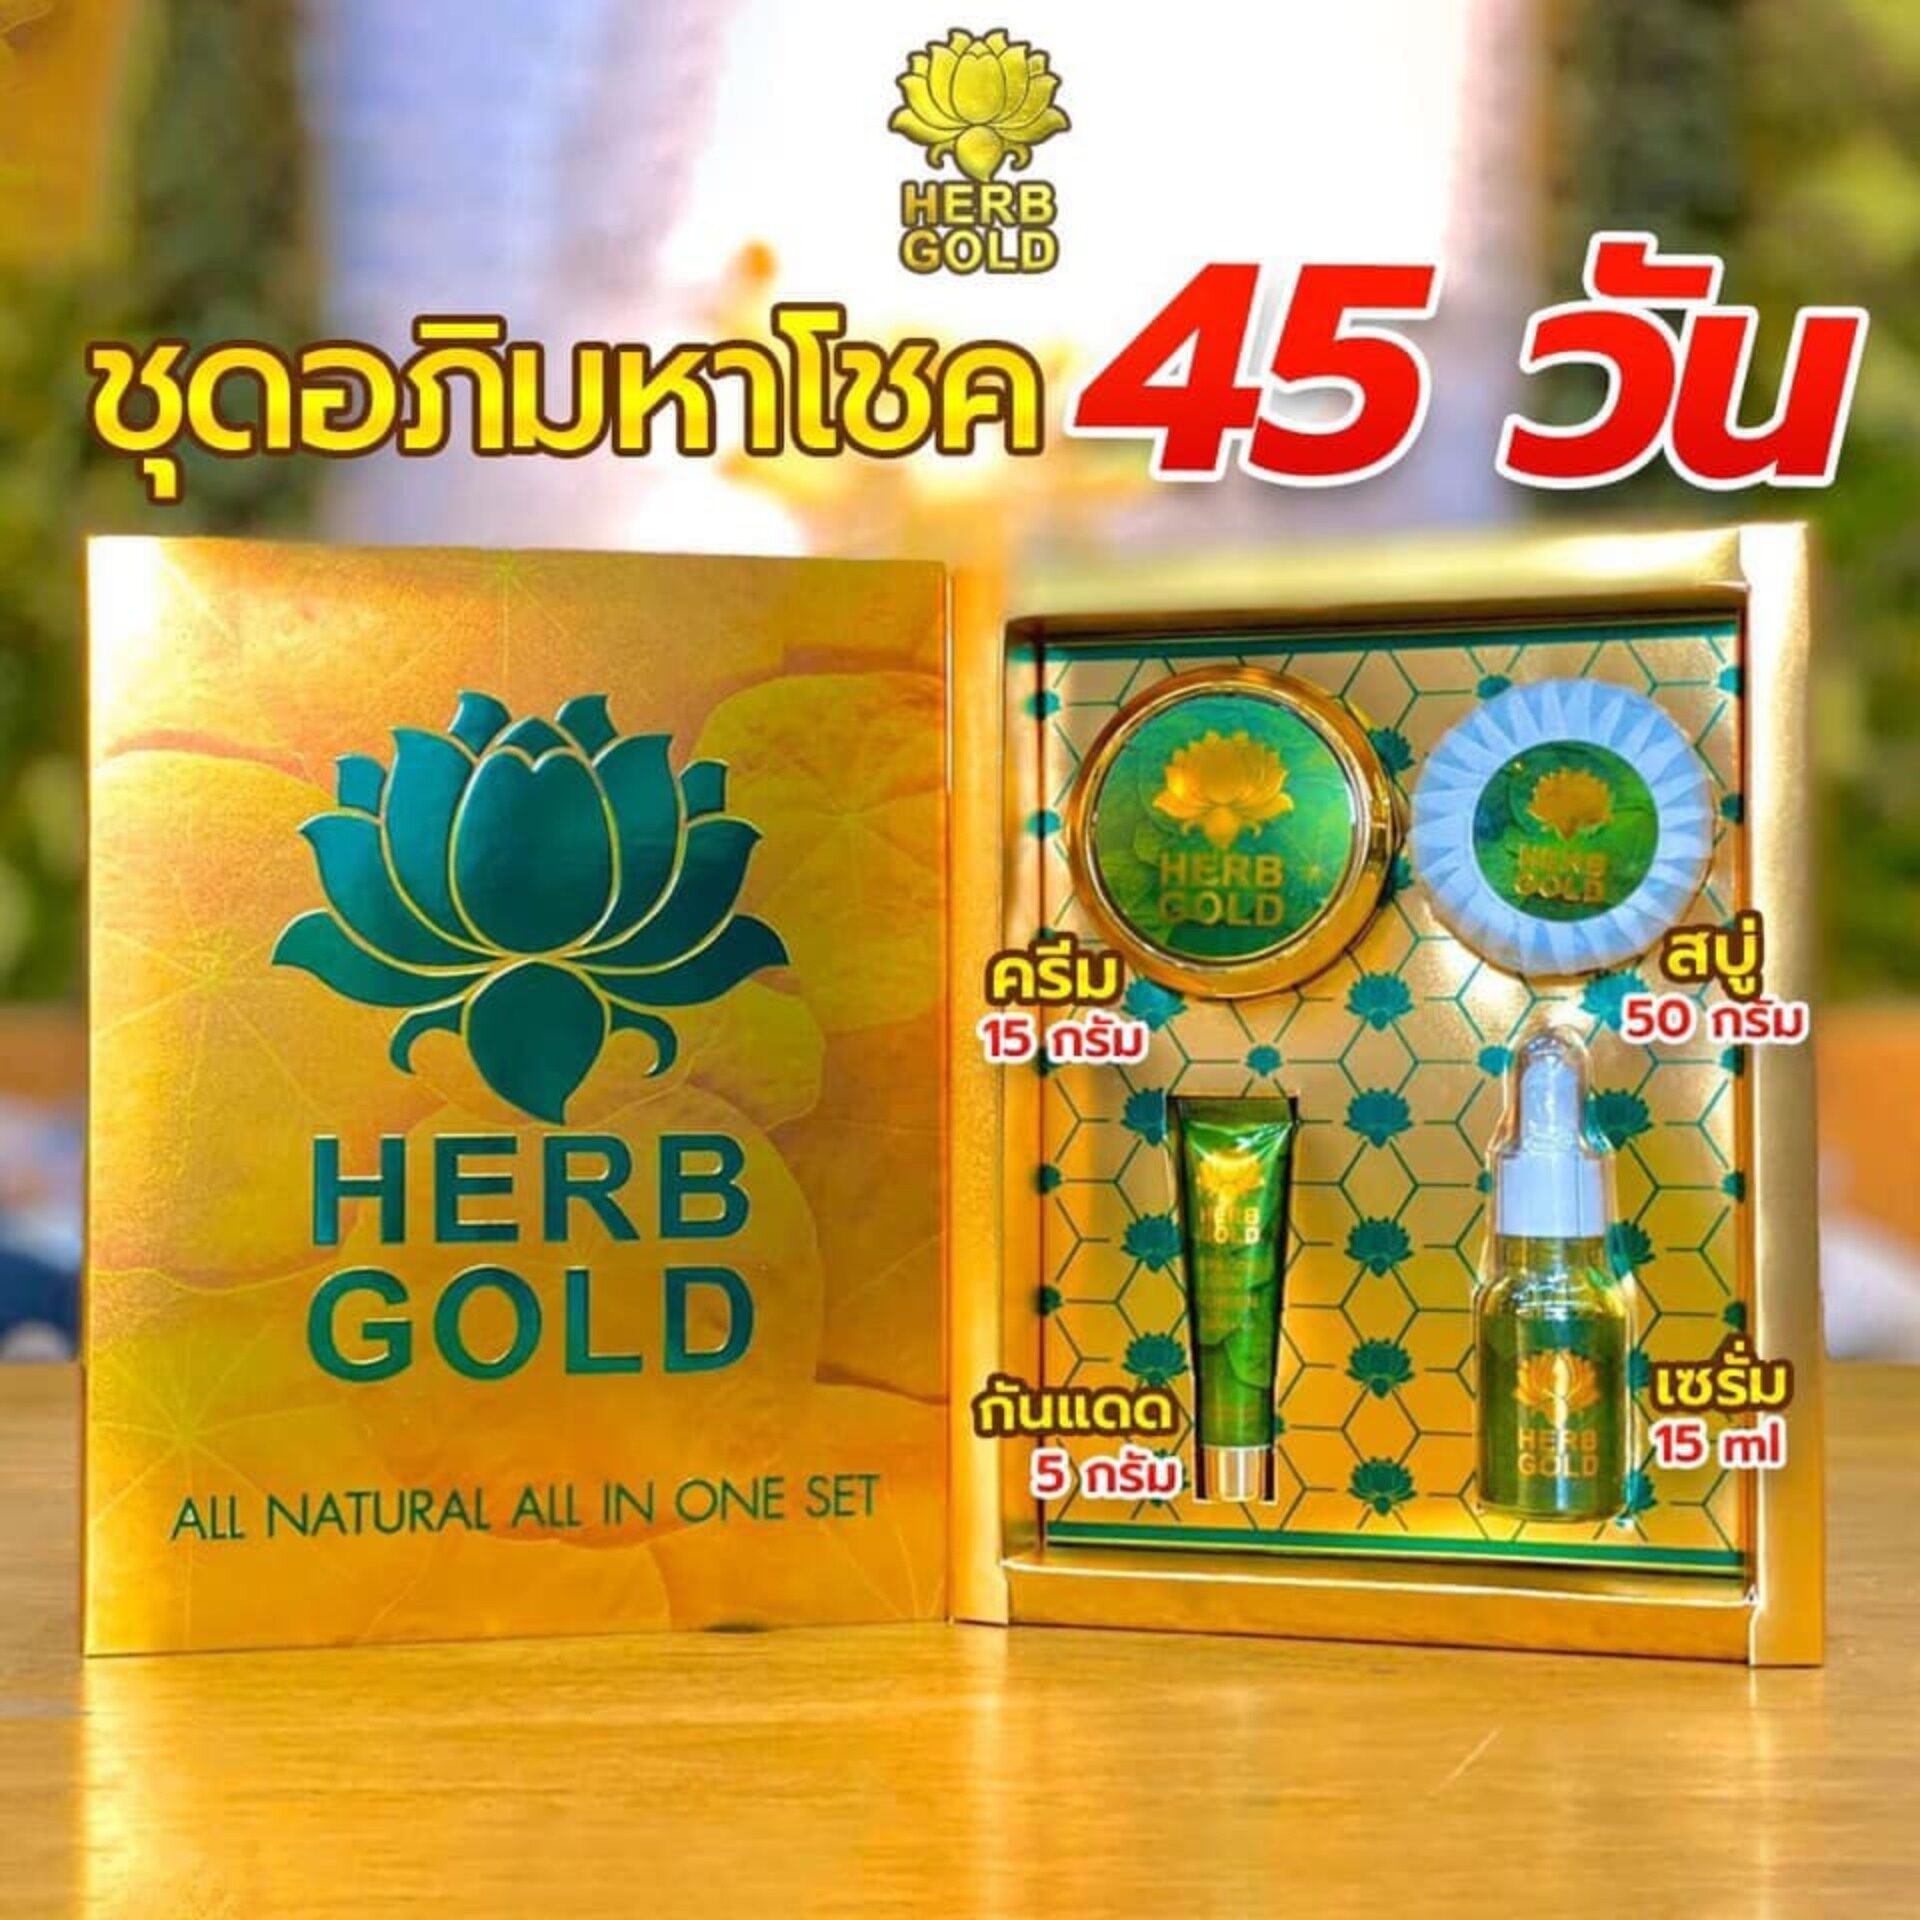 แนะนำ herb inside เซตลิมิเต็ด อภิมหาโชค herb gold NEW LIMITED HERB GOLDเฮิร์บ โกลด์ ( 1 ชุด )